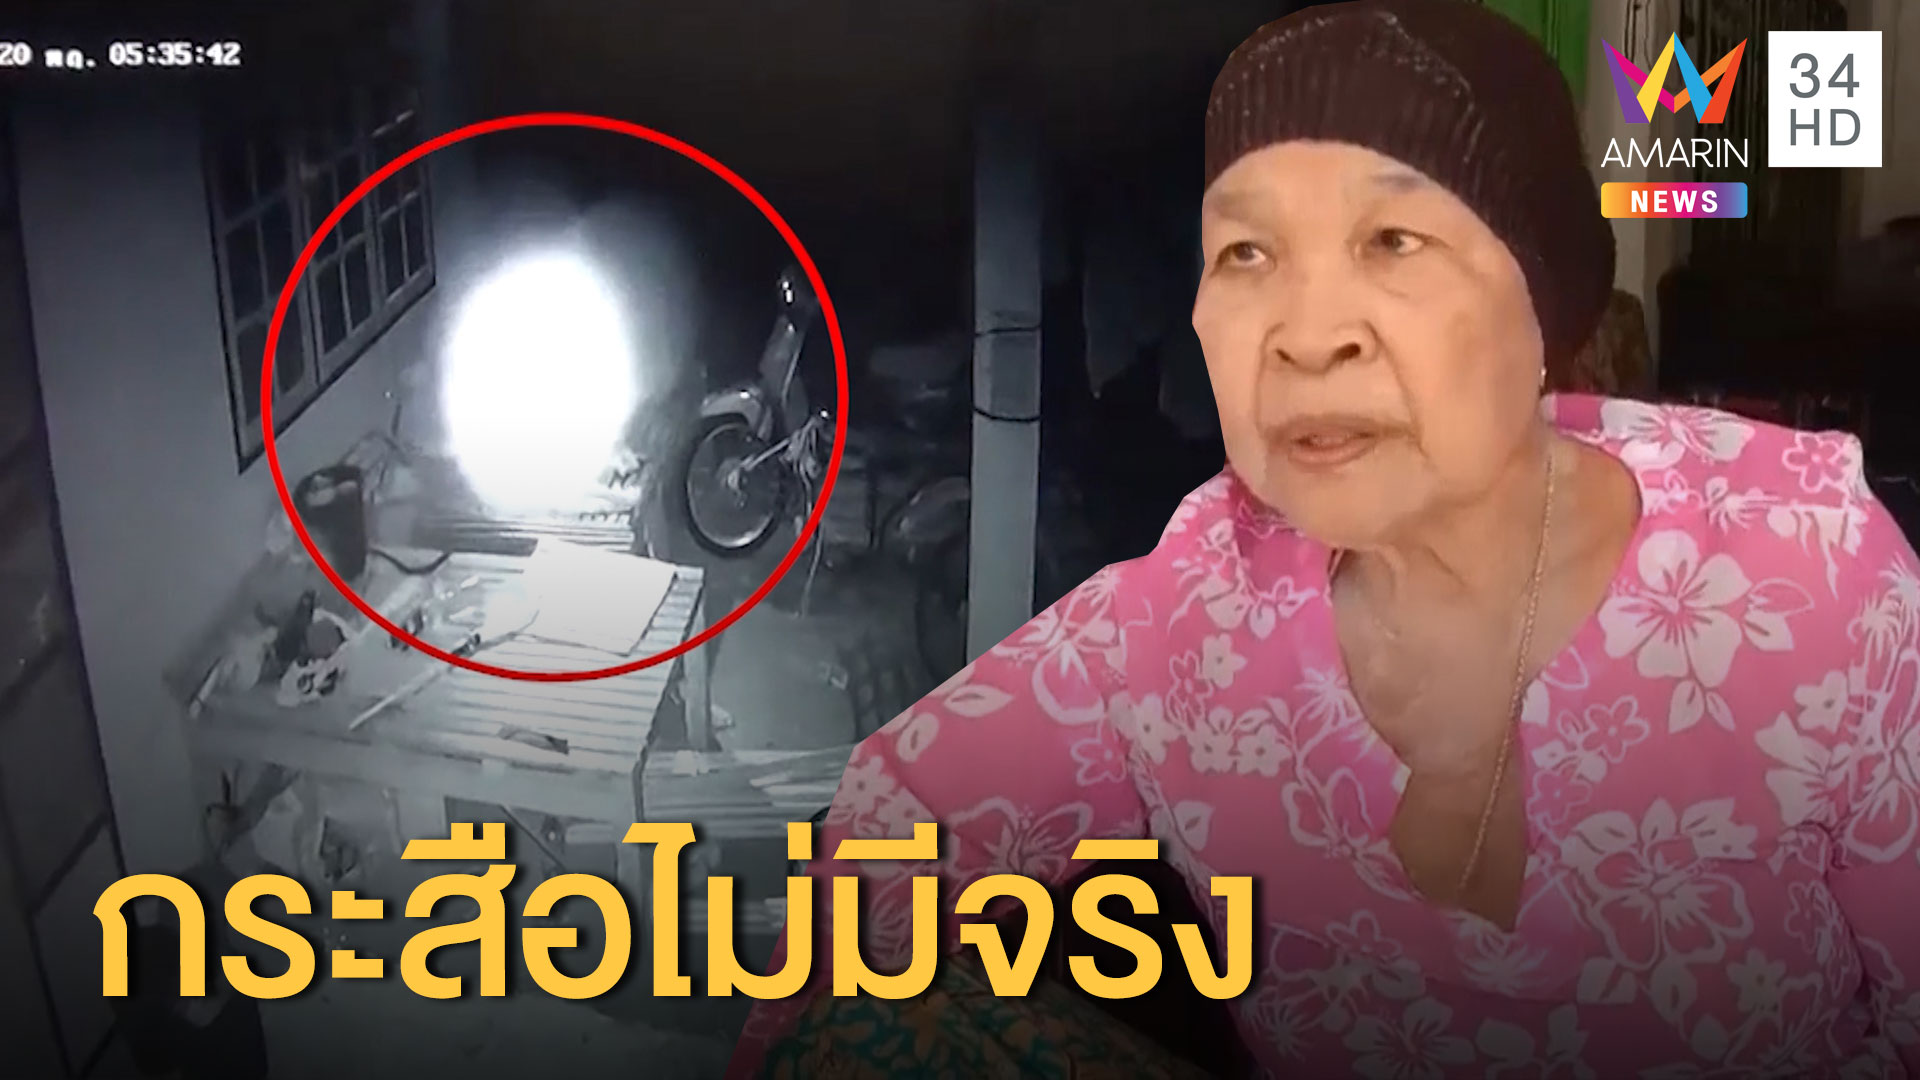 เพื่อนบ้านไม่เชื่อเรื่องดวงไฟกระสือลอยกินไข่ไก่ | ข่าวเย็นอมรินทร์ | 18 มี.ค. 63 | AMARIN TVHD34